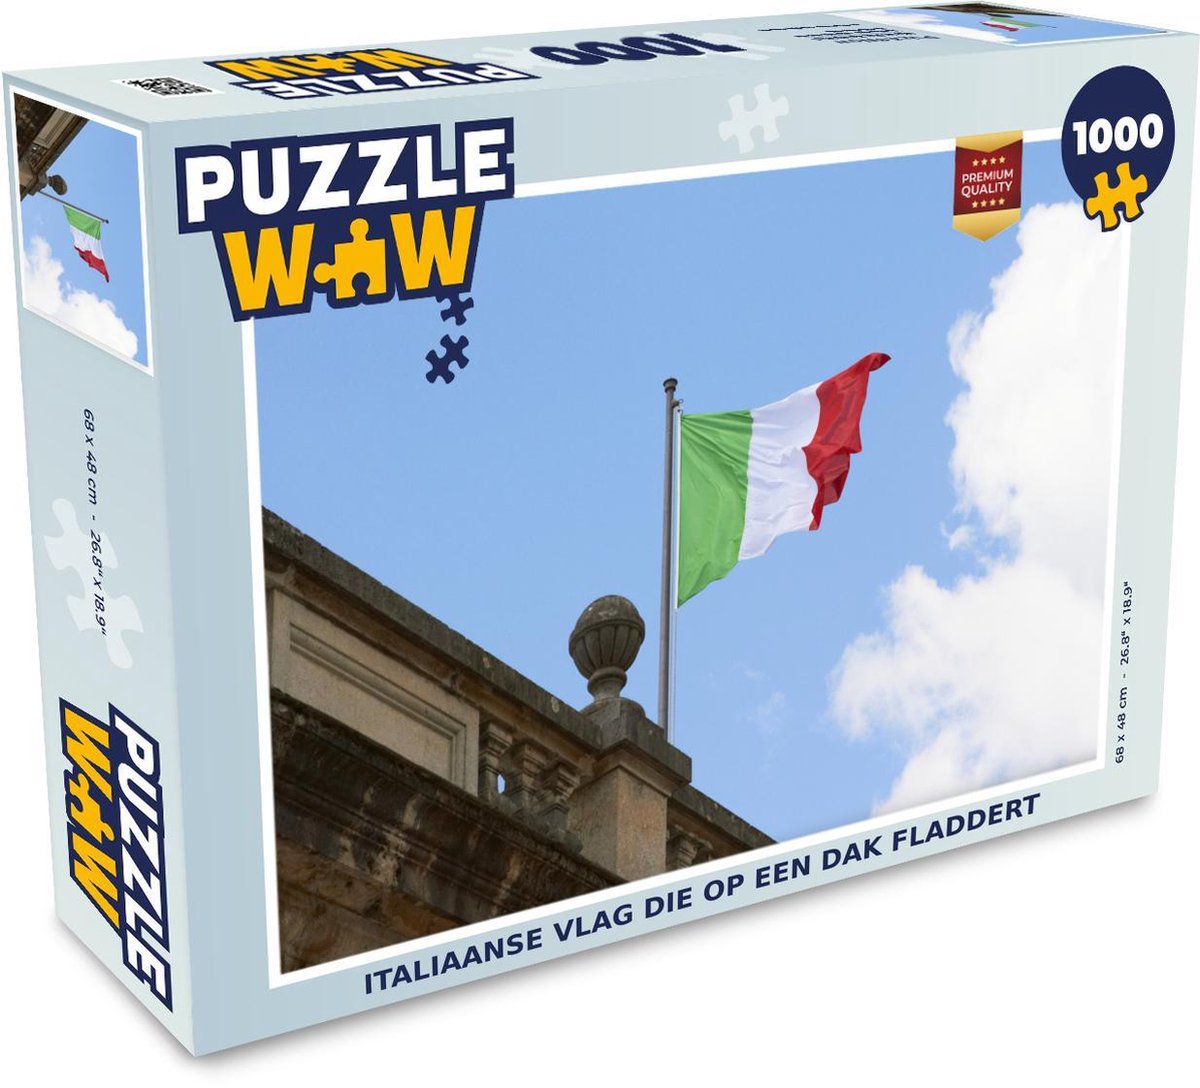 Afbeelding van product Puzzel 1000 stukjes volwassenen Vlag Italië 1000 stukjes - Italiaanse vlag die op een dak fladdert - PuzzleWow heeft +100000 puzzels